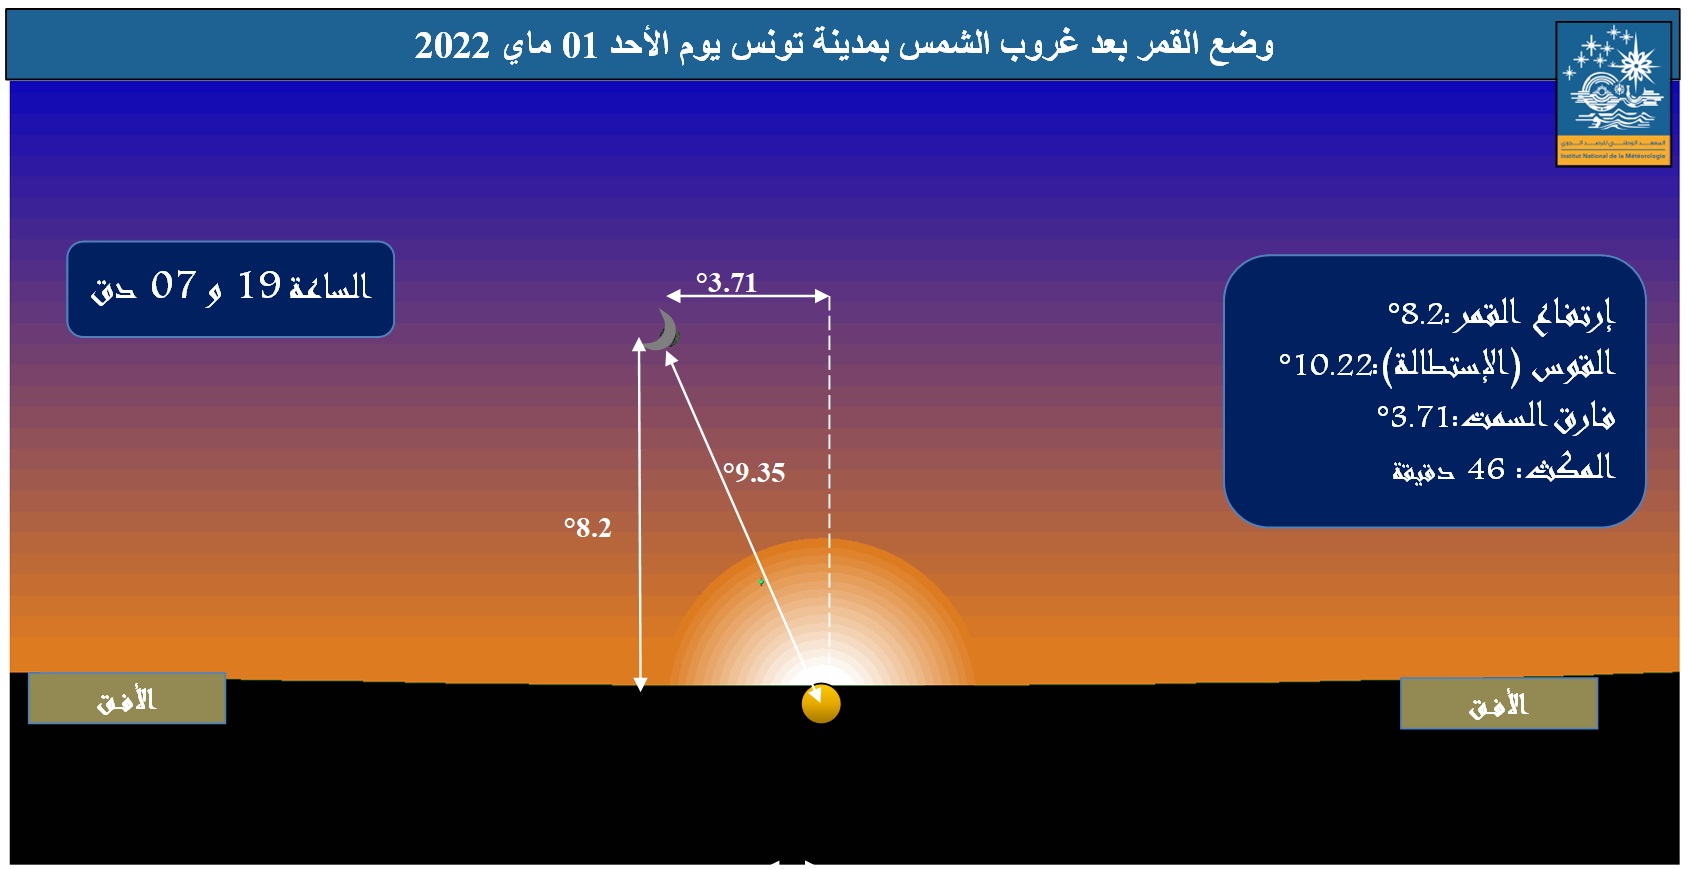 صورة 3 : وضع القمر في الأفق الغربي بمدينة تونس، بعد غروب الشمس يوم الأحد  1 ماي 2022 و تظهر الصورة المعطيات الفلكية من قوس (استطالة) و ارتفاع و فارق سمت بين الشمس والقمر.